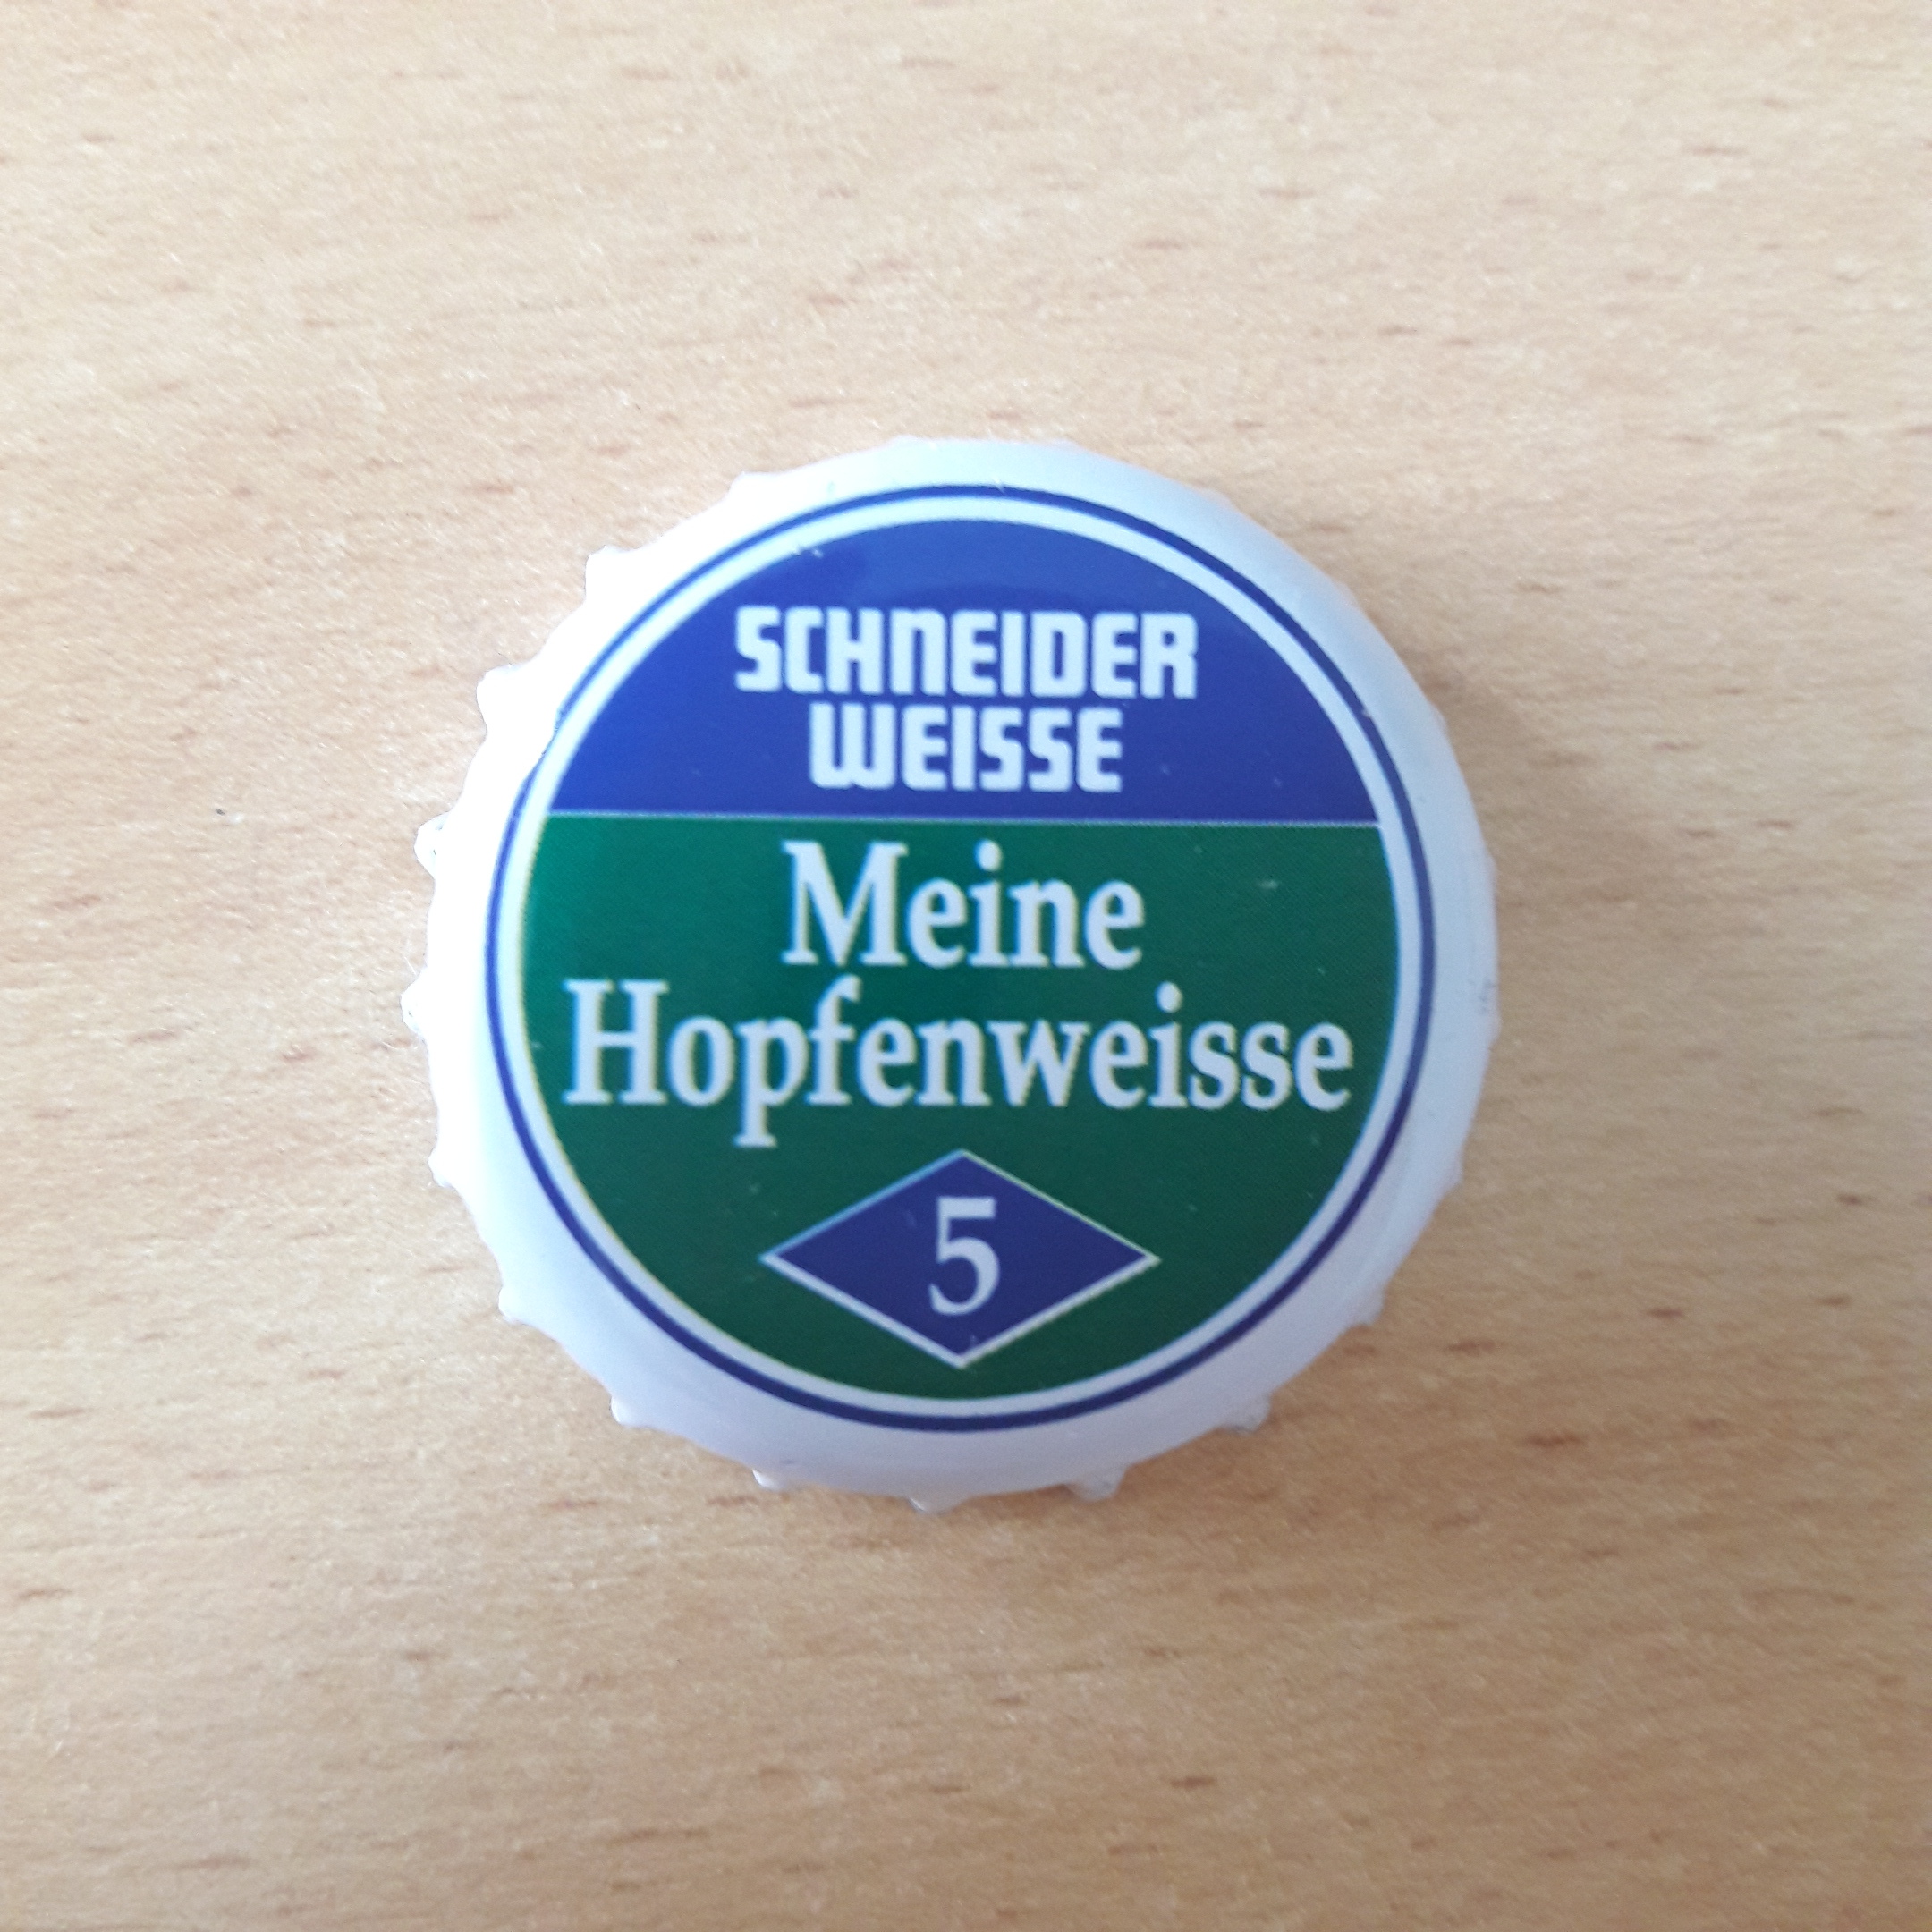 Schneiders Weisse 5 Meine Hopfenweisse